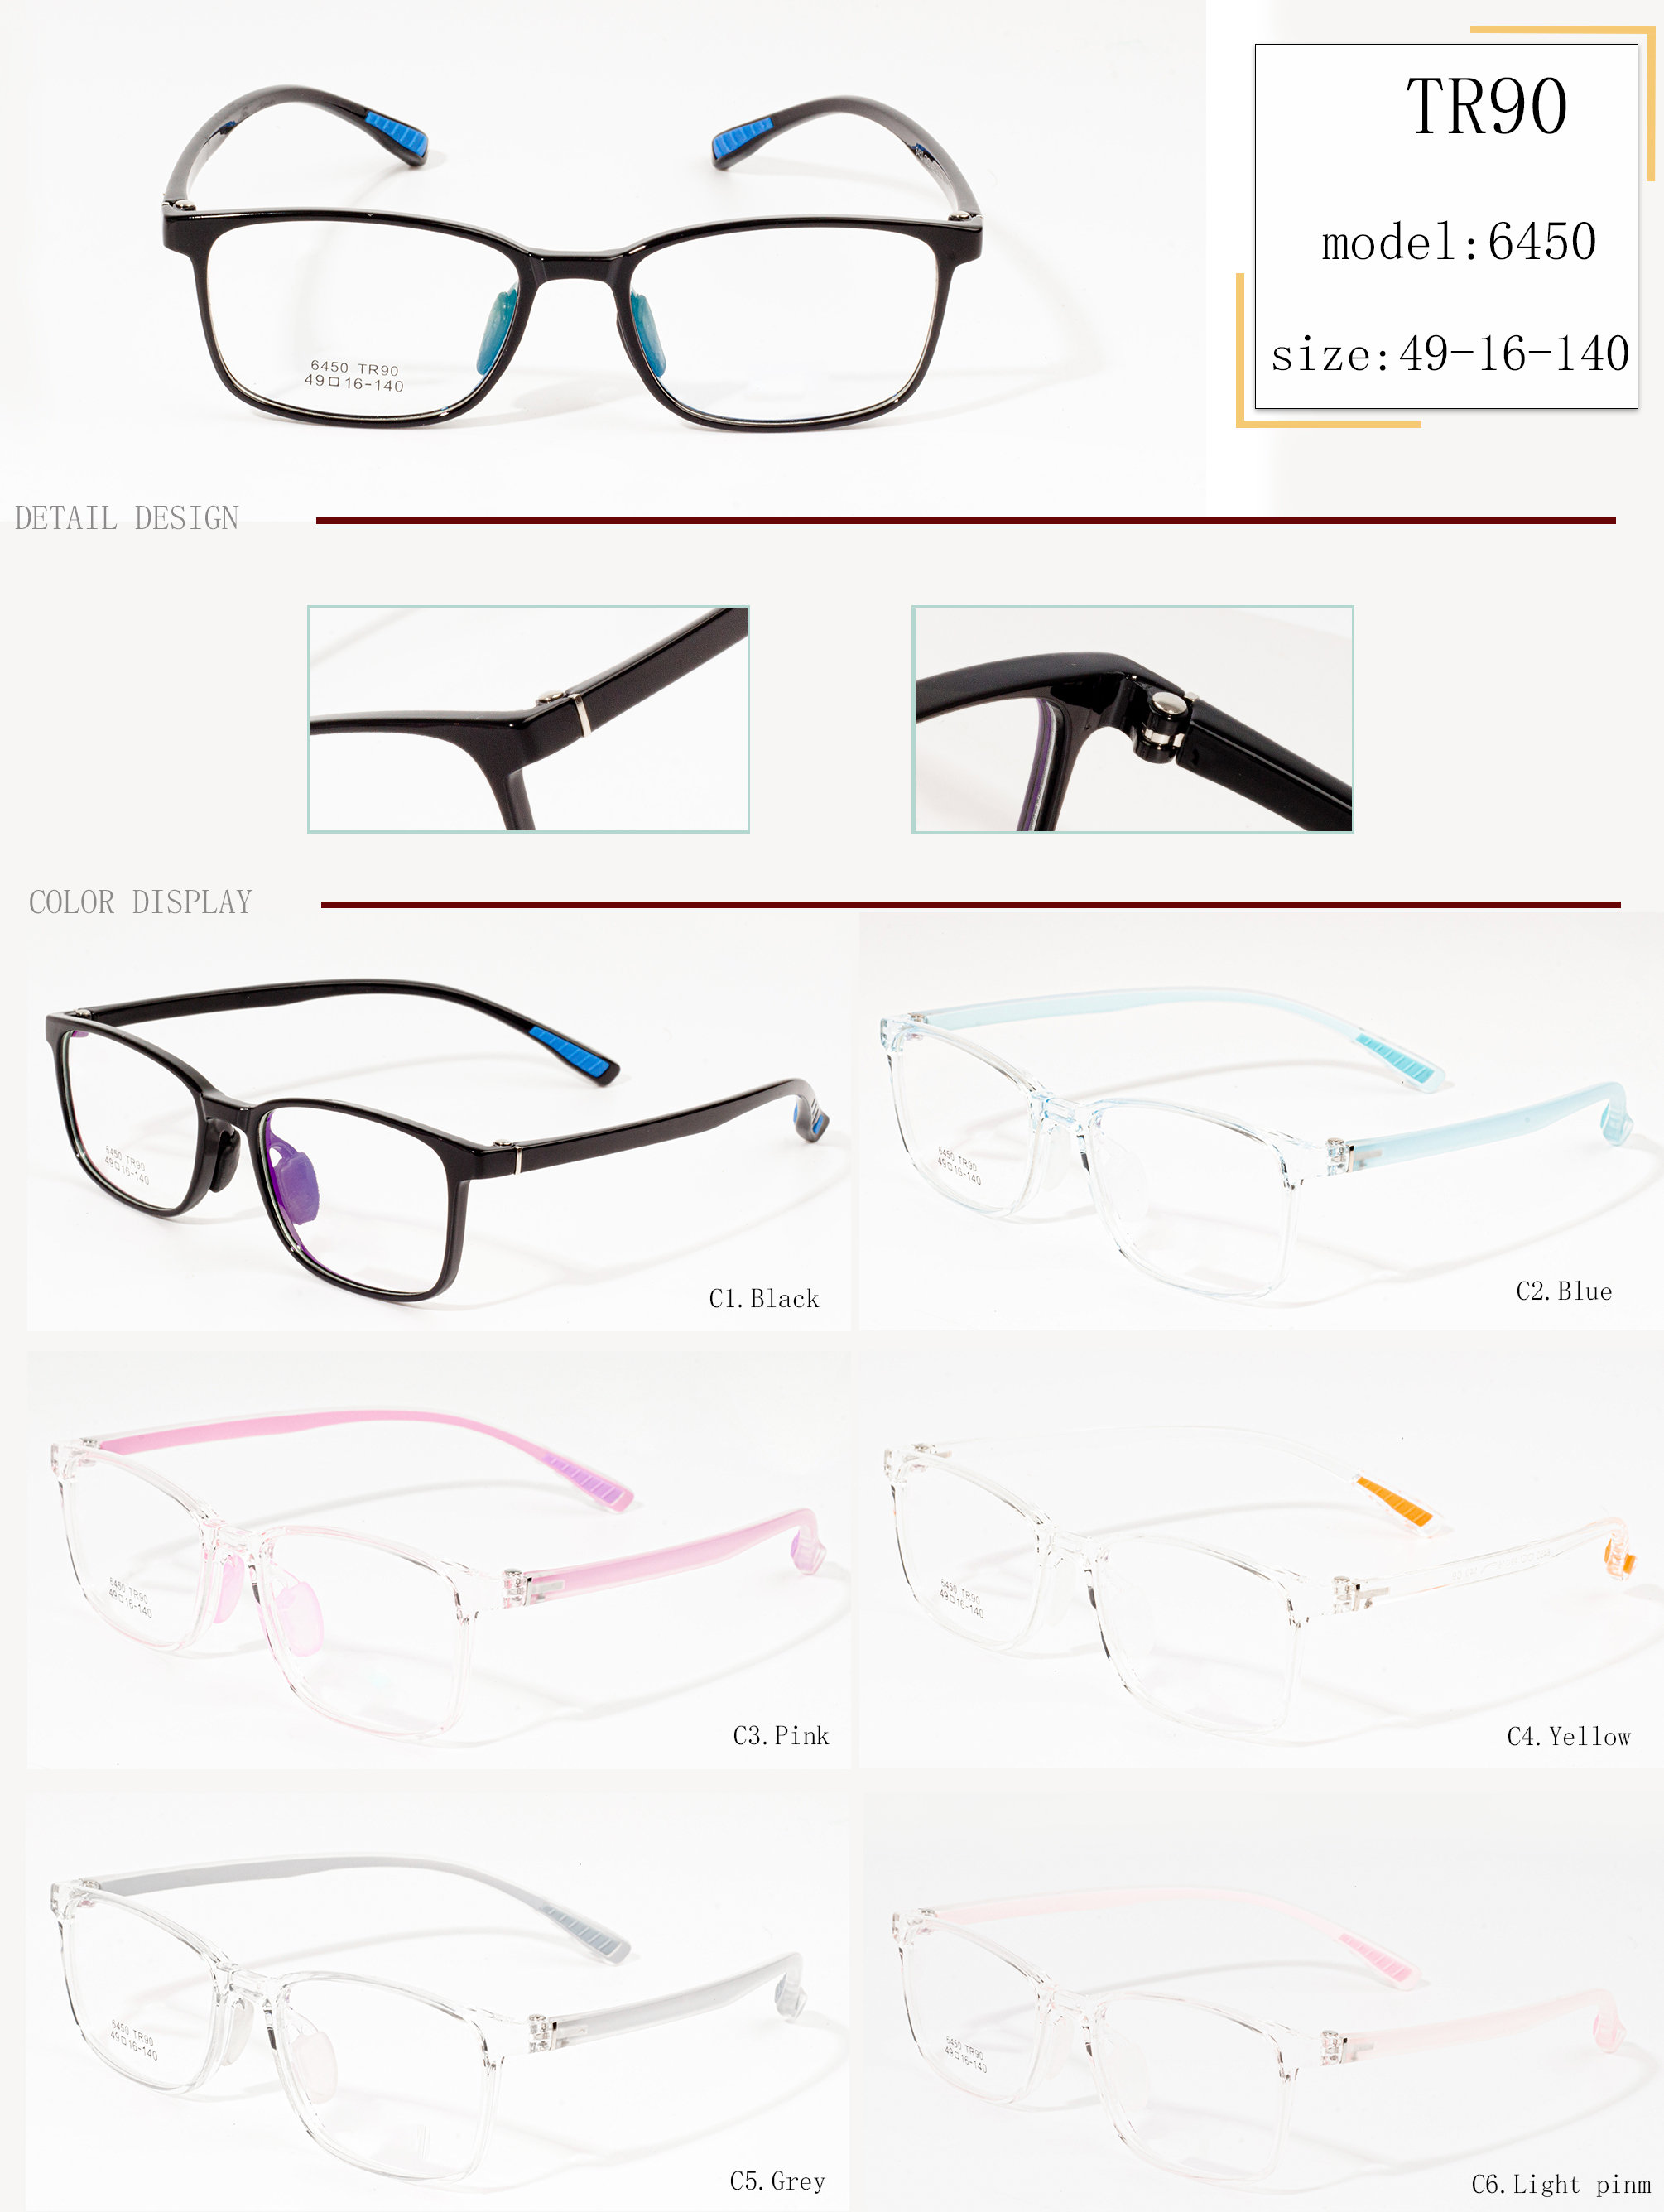  branded eyewear designs